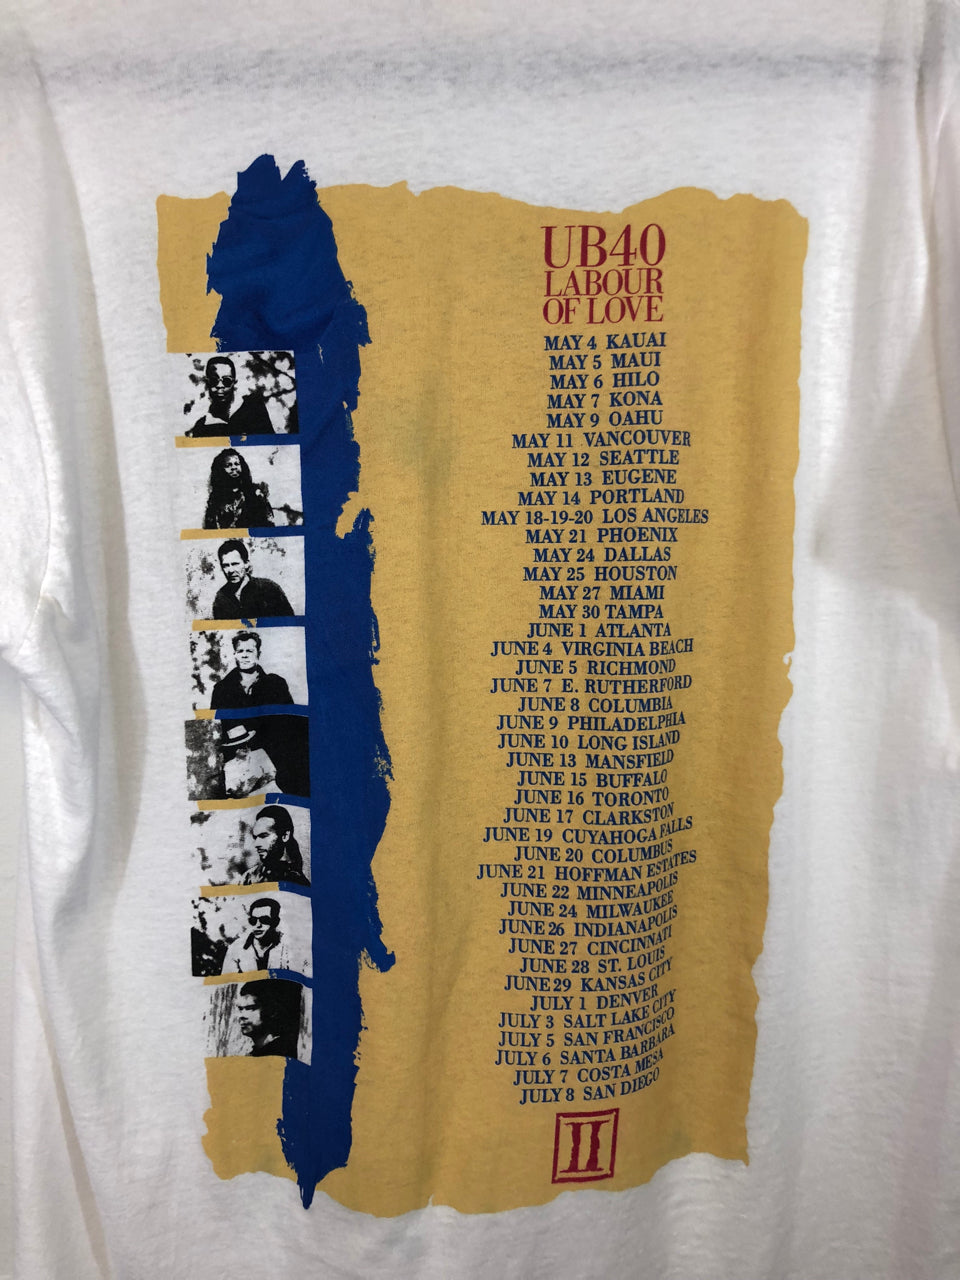 UB40 Labour of Love Tour 1990 T-Shirt